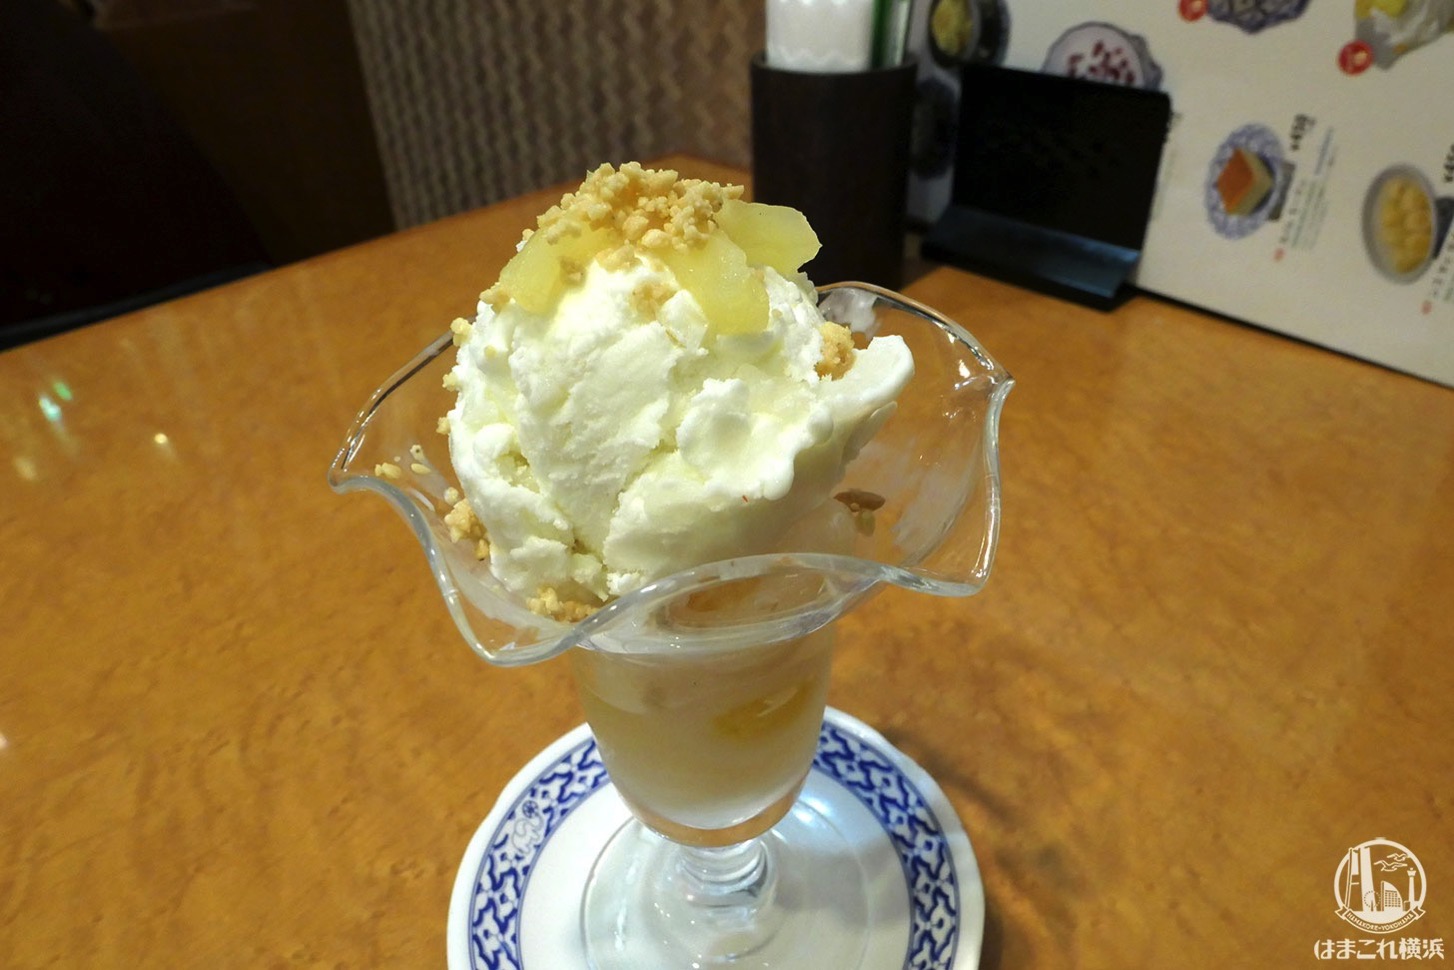 ン ゴ ヤッ サイ サバロッ＆アイスクリーム（パイナップル入りランブータンとアイスクリーム）680円